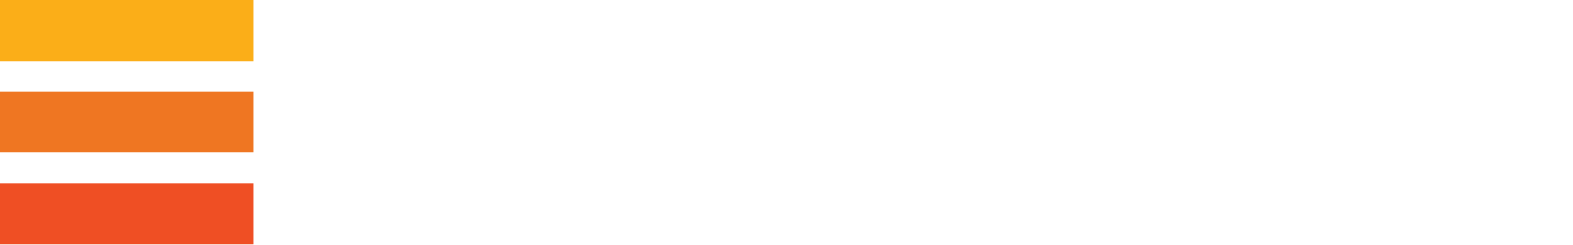 Evraz logo grand pour les fonds sombres (PNG transparent)